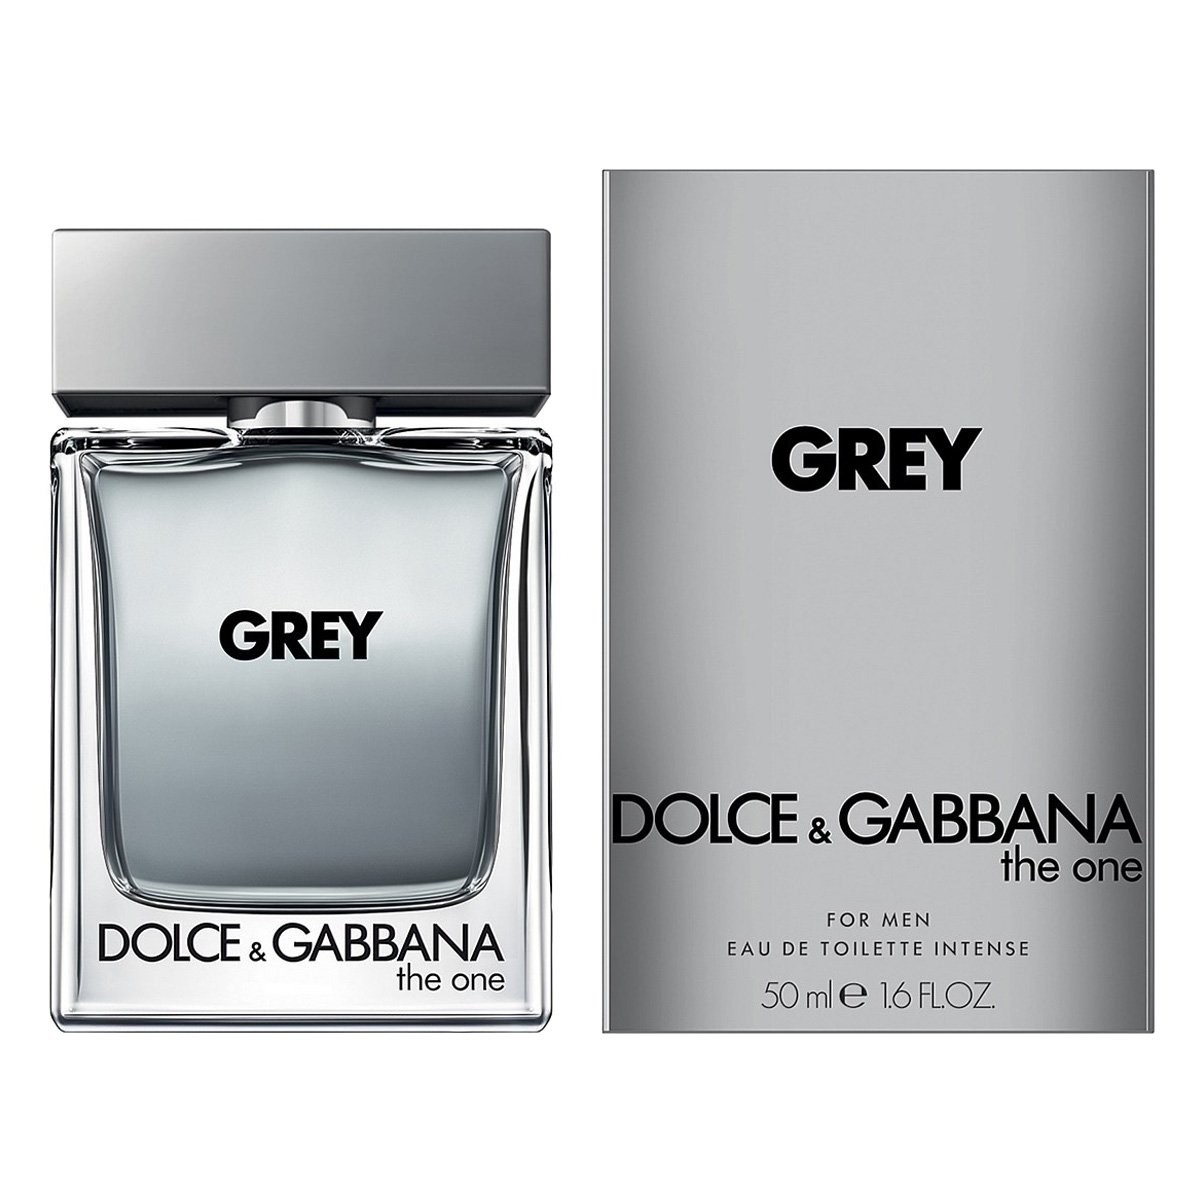 Дольче габбана цена фото. Мужские духи дольчегабвнв 50 мл. Dolce & Gabbana Grey the one for men 100ml. Dolce & Gabbana k for men 100 мл. Grey Dolce Gabbana 100ml.